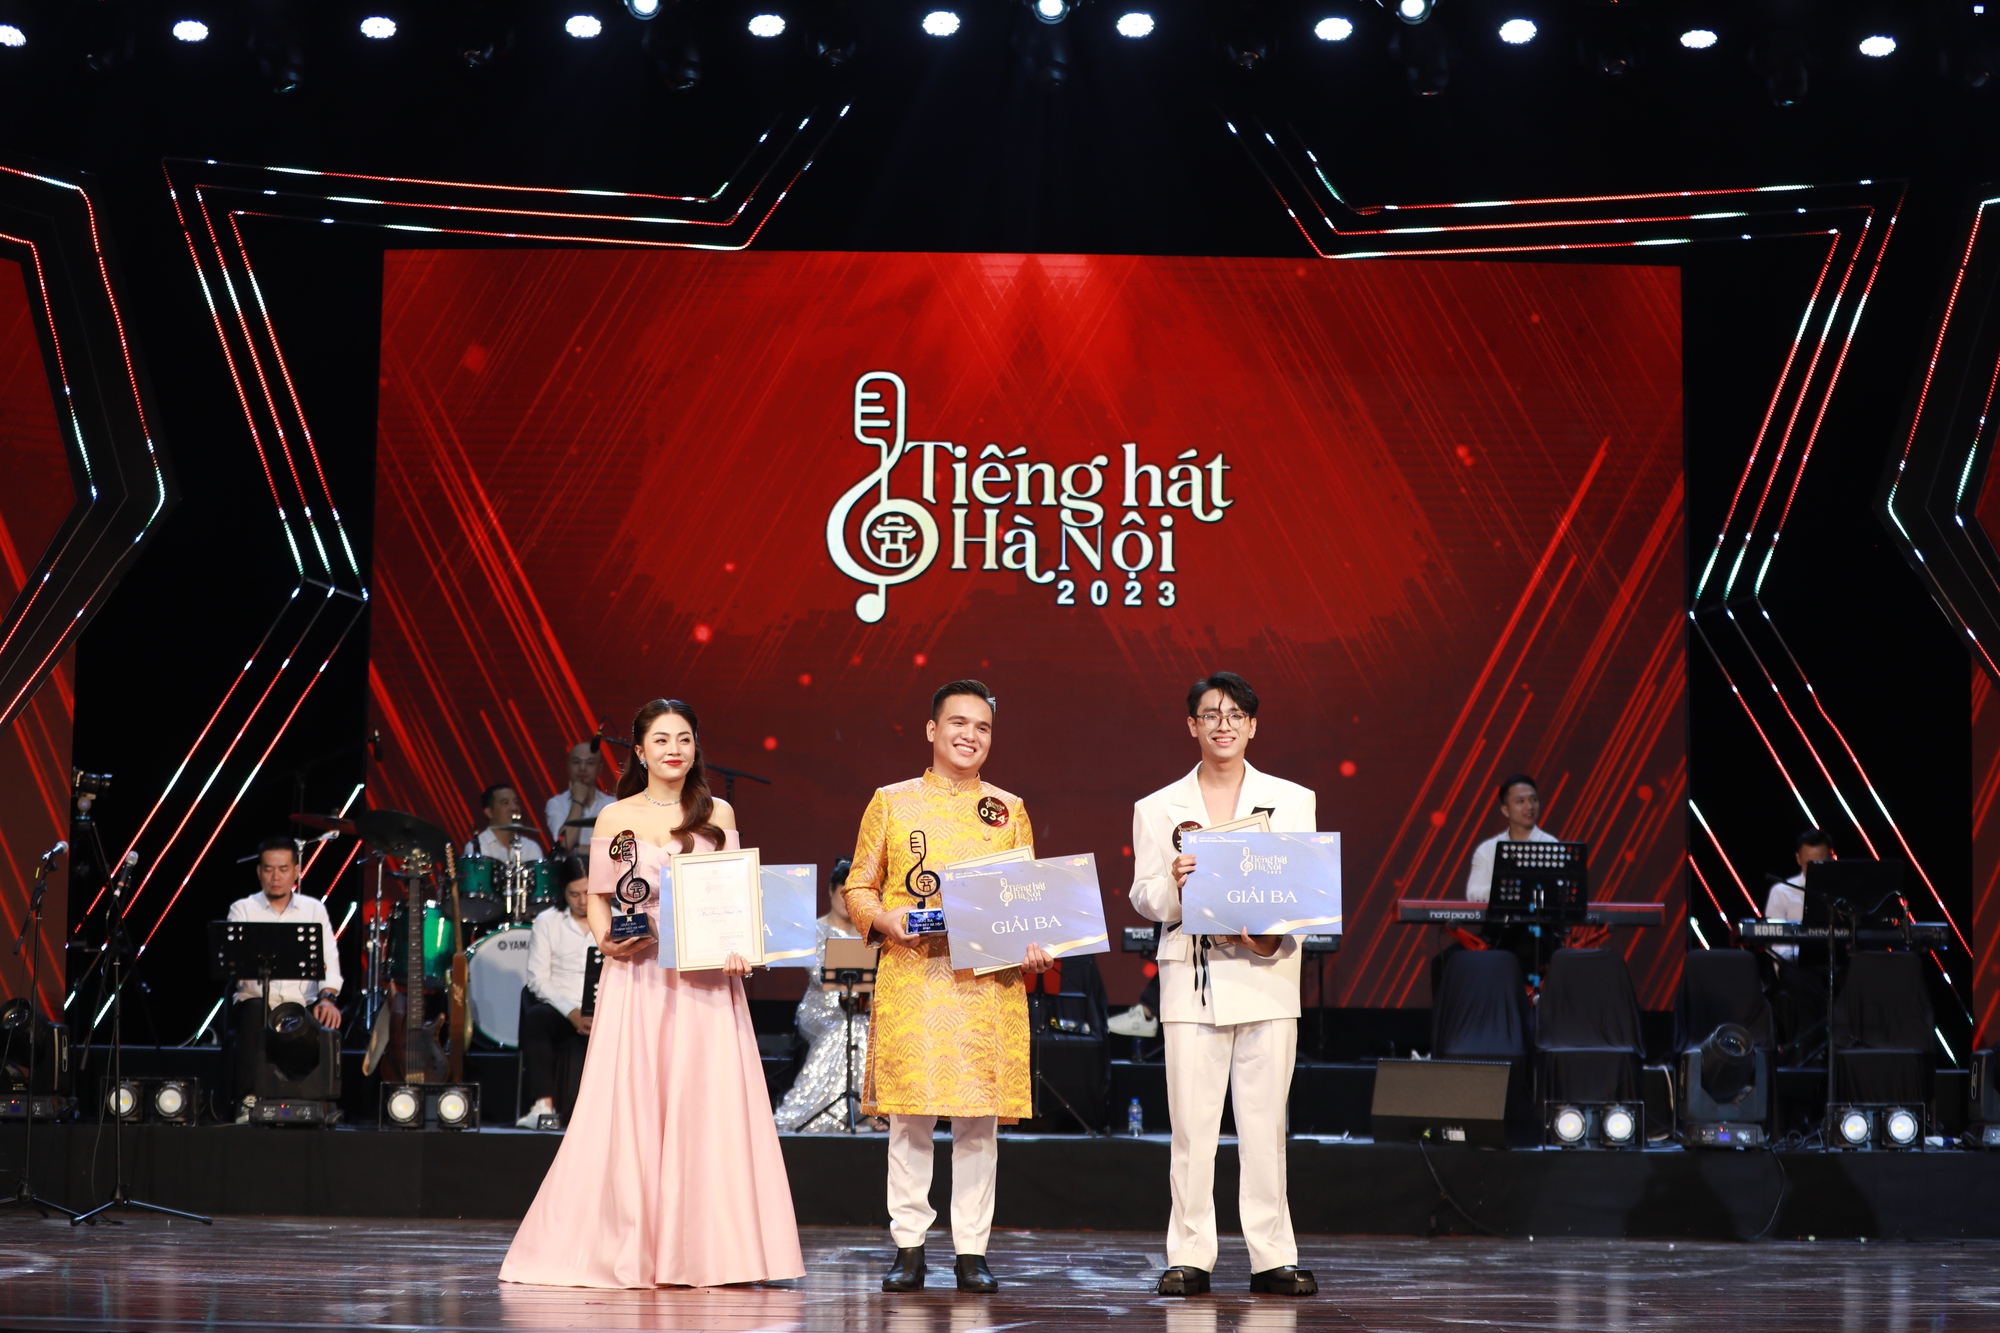 Điều bất ngờ về cô gái Hà Tĩnh đoạt Quán quân Tiếng hát Hà Nội 2023 ở tuổi 18 - Ảnh 5.